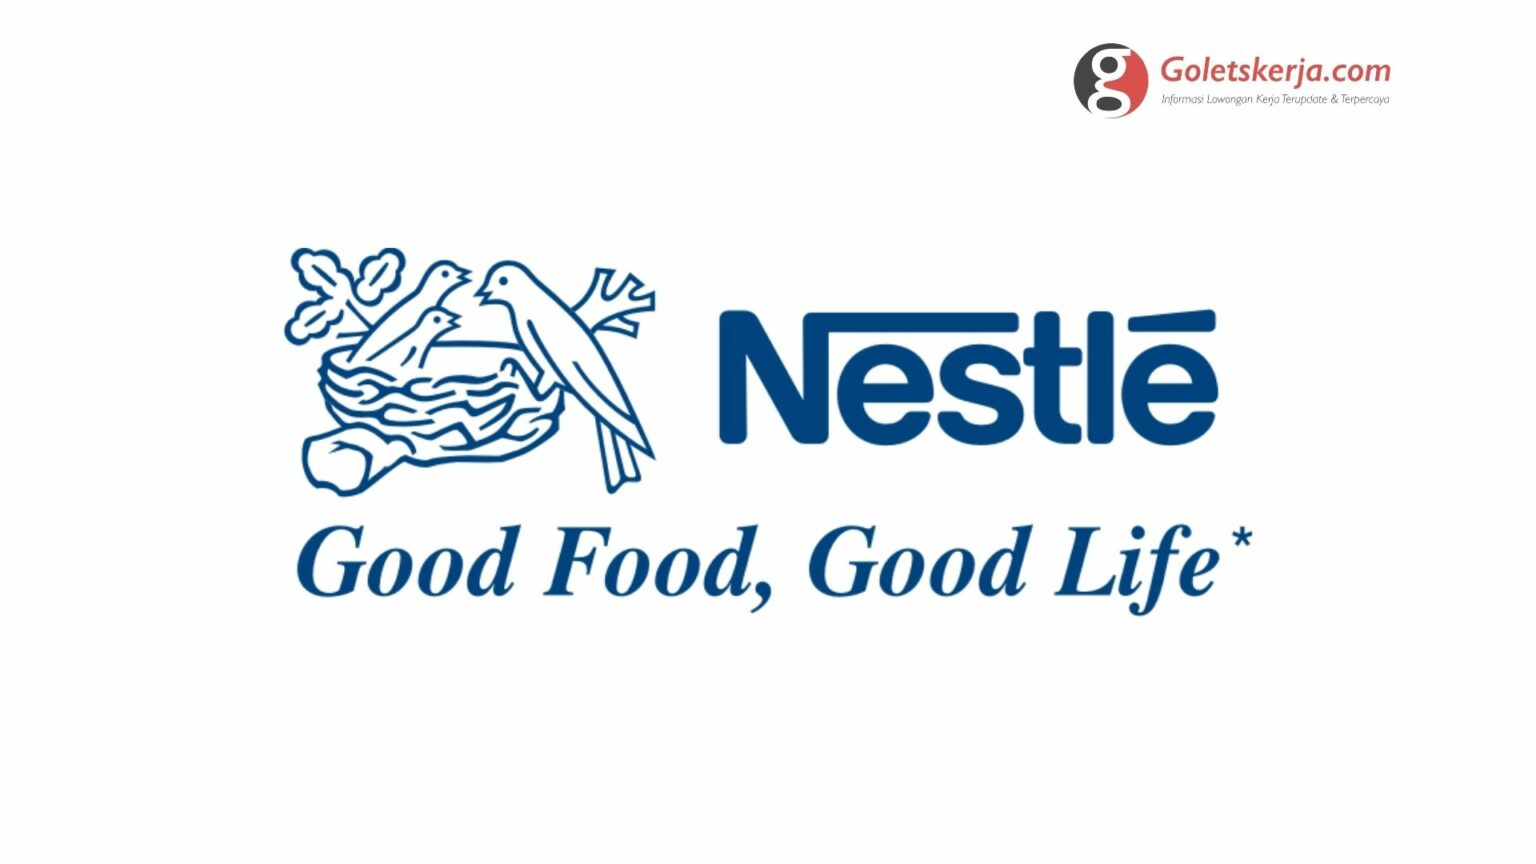 Lowongan Kerja PT Nestlé Indonesia - Goletskerja